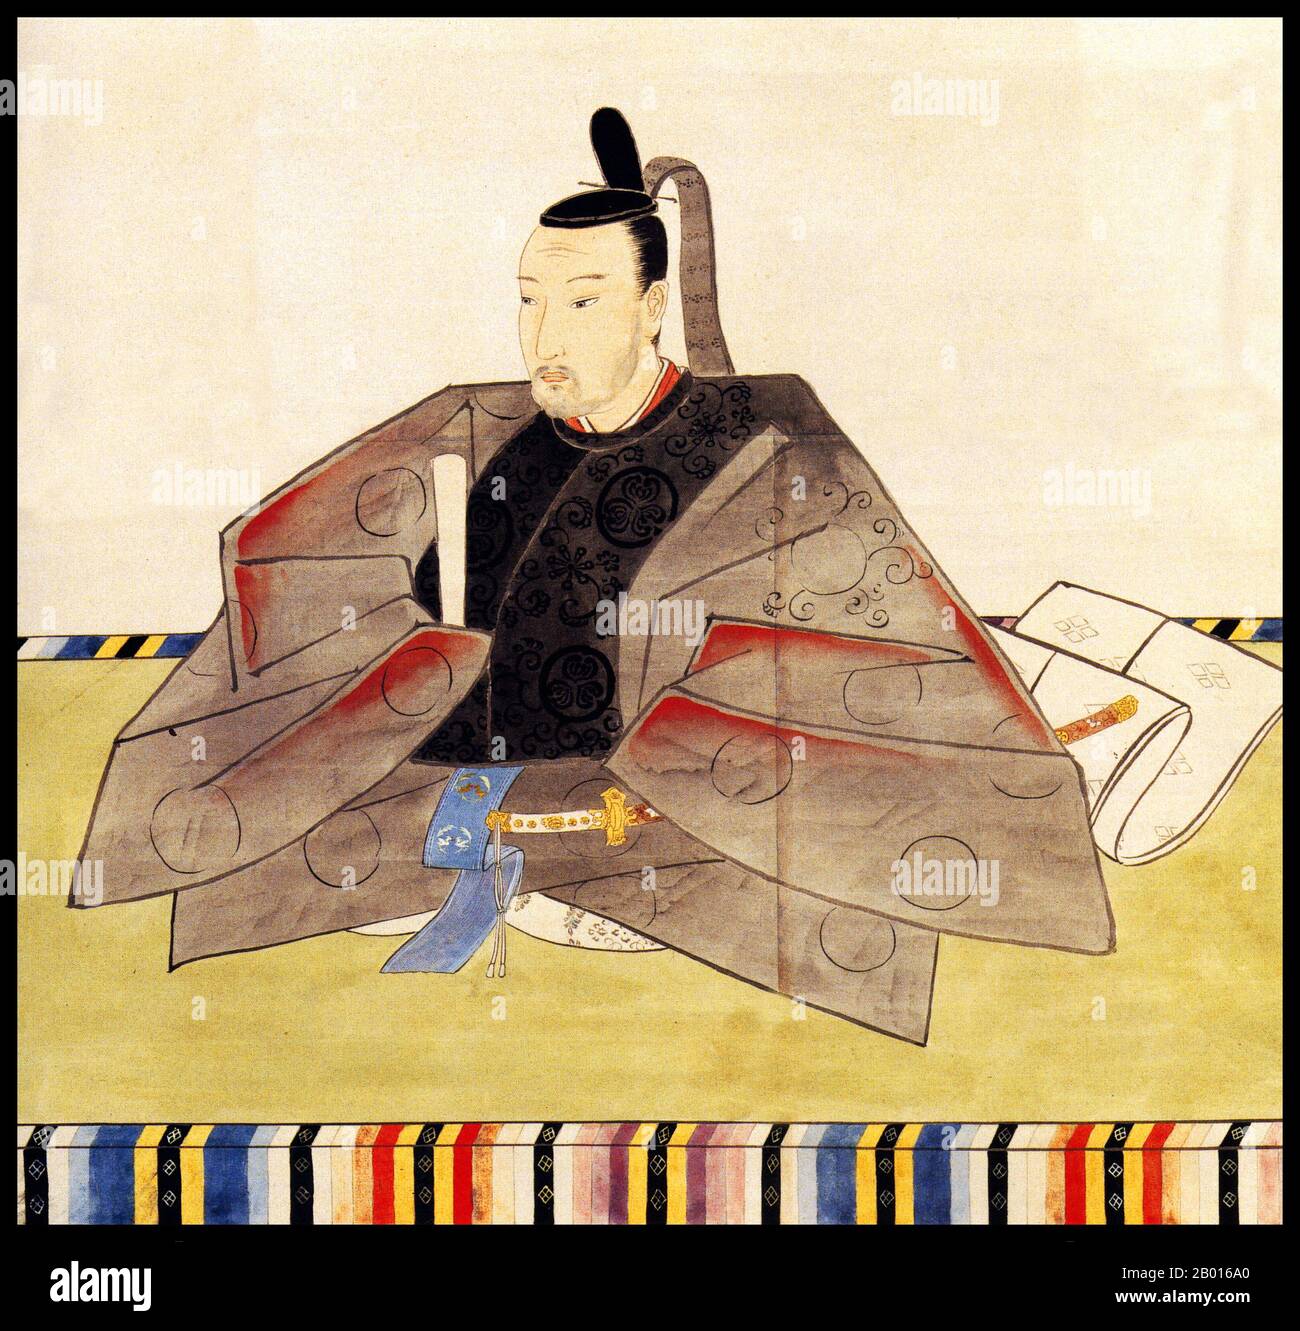 Japon: Tokugawa Iesada (6 mai 1824 - 14 août 1858), treizième souverain du shogunat Tokugawa (r.1853-1858).Peinture à la spirale suspendue, 19e siècle.Tokugawa Iesada, né Masanosuke, était le 13ème shogun du shogunat Tokugawa et le quatrième fils du shogun Tokugawa Ieyoshi.Il a été marqué de la variole et peut avoir eu une paralysie cébral, laissant des inquiétudes au sujet de sa forme physique comme héritier.Sa mauvaise santé signifie qu'il n'a pas pris de rôle politique actif, laissant les négociations avec les Américains aux mains de ses conseillers.Une série de tremblements de terre et de tsunamis ont frappé en 1854 en 1855, tuant des dizaines de milliers de personnes. Banque D'Images